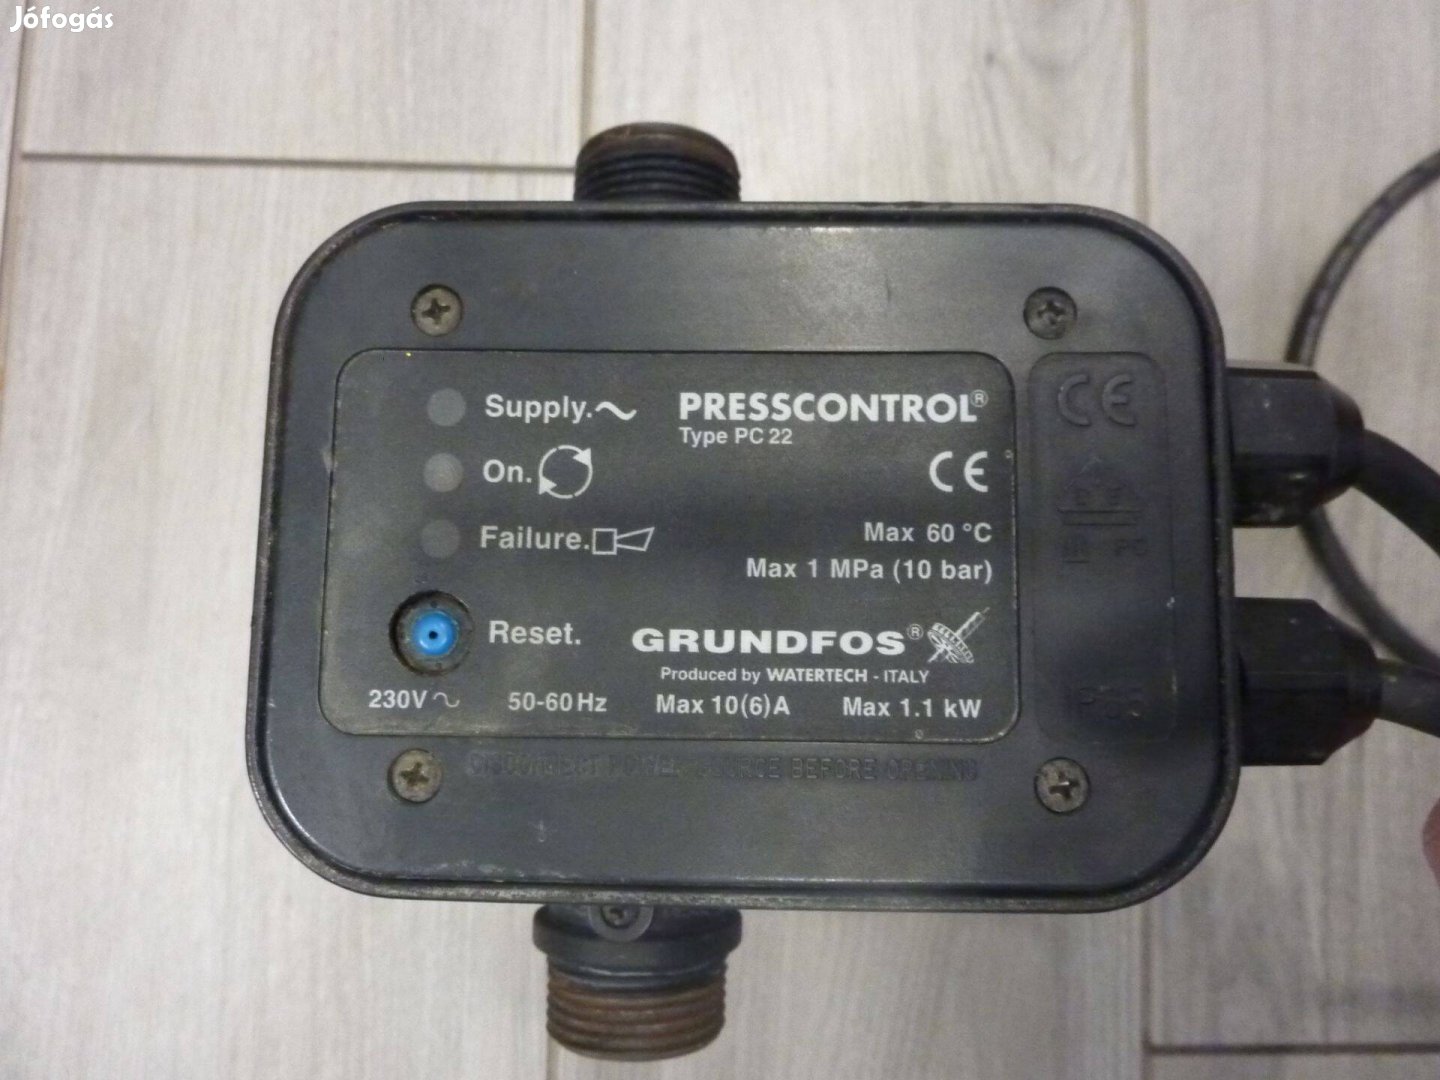 Grundfos Szivattyú Presscontrol Hydrocontrol nyomáskapcsoló vezérlő